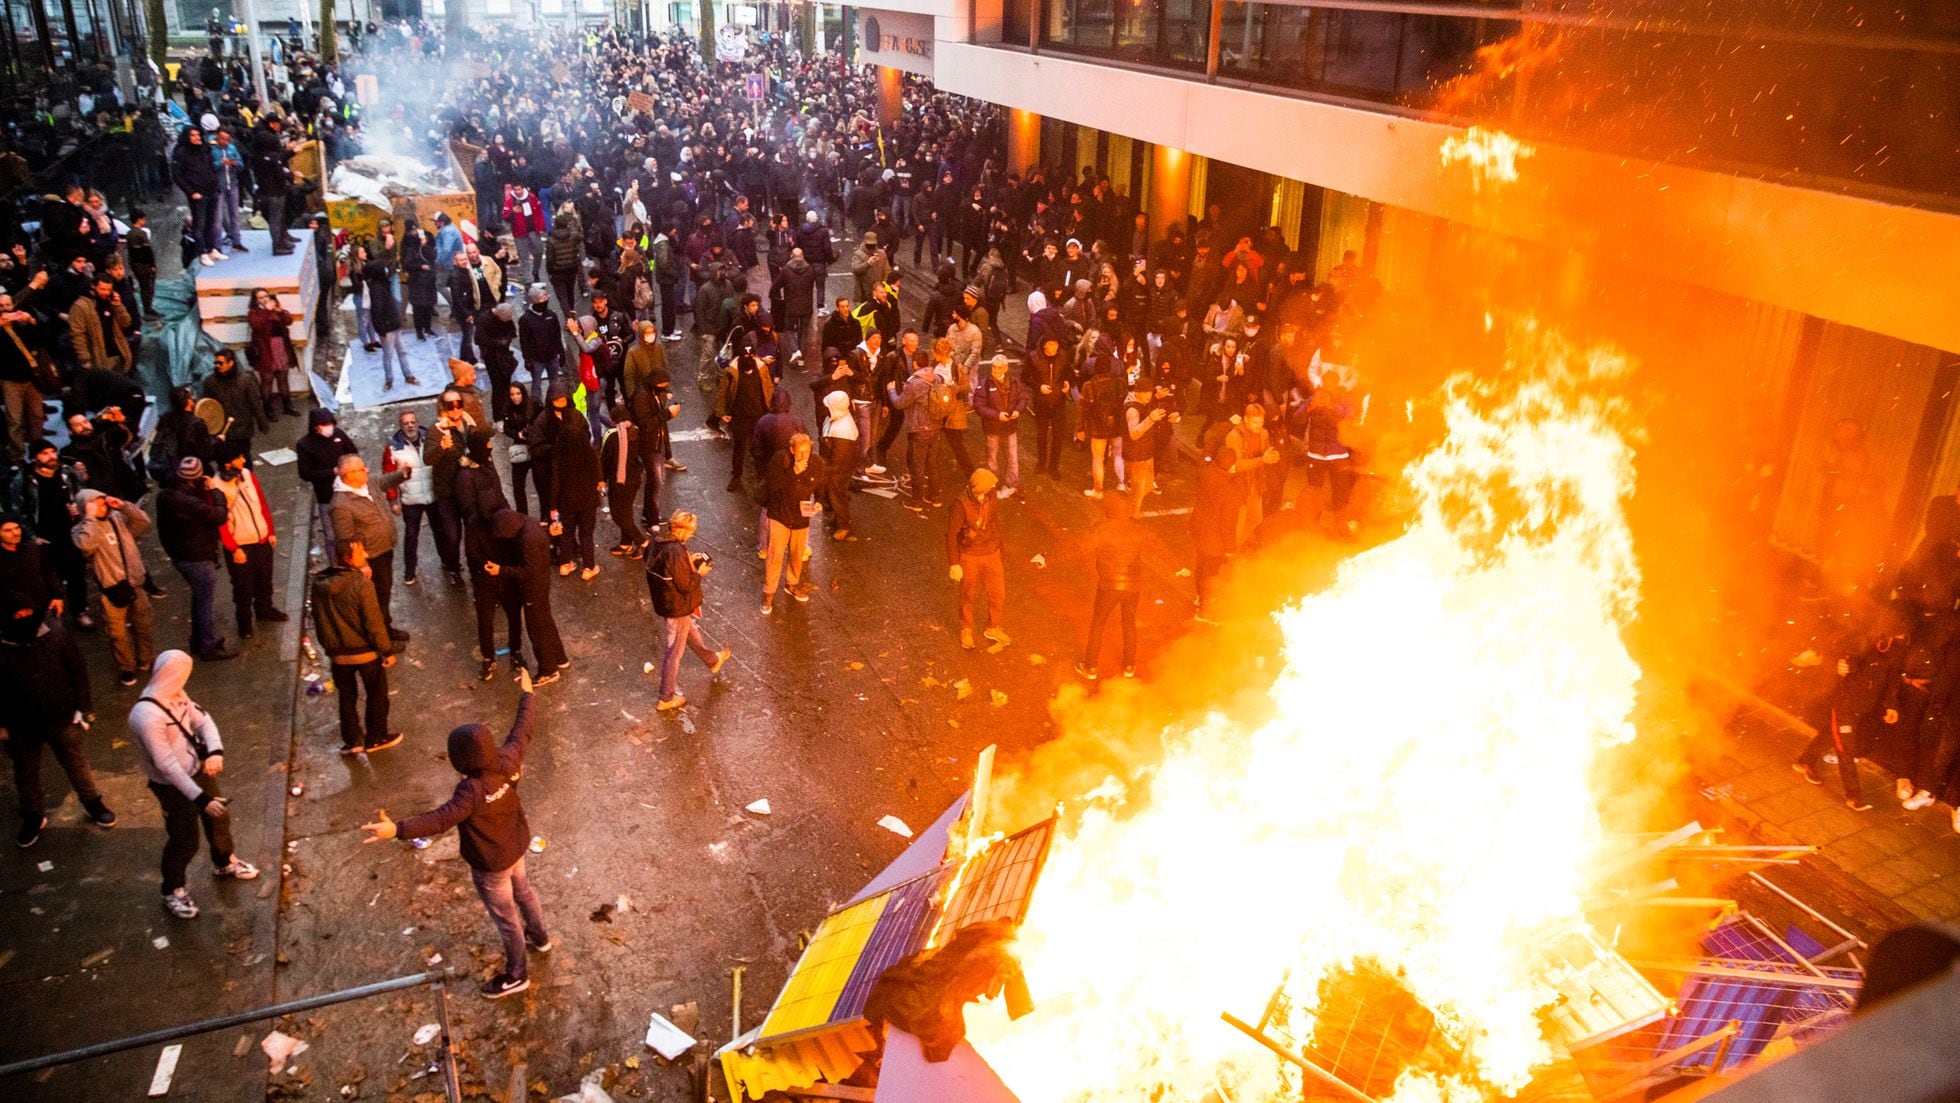 Graves disturbios en Bélgica y en Países Bajos contra las restricciones por  la pandemia | Sociedad | EL PAÍS